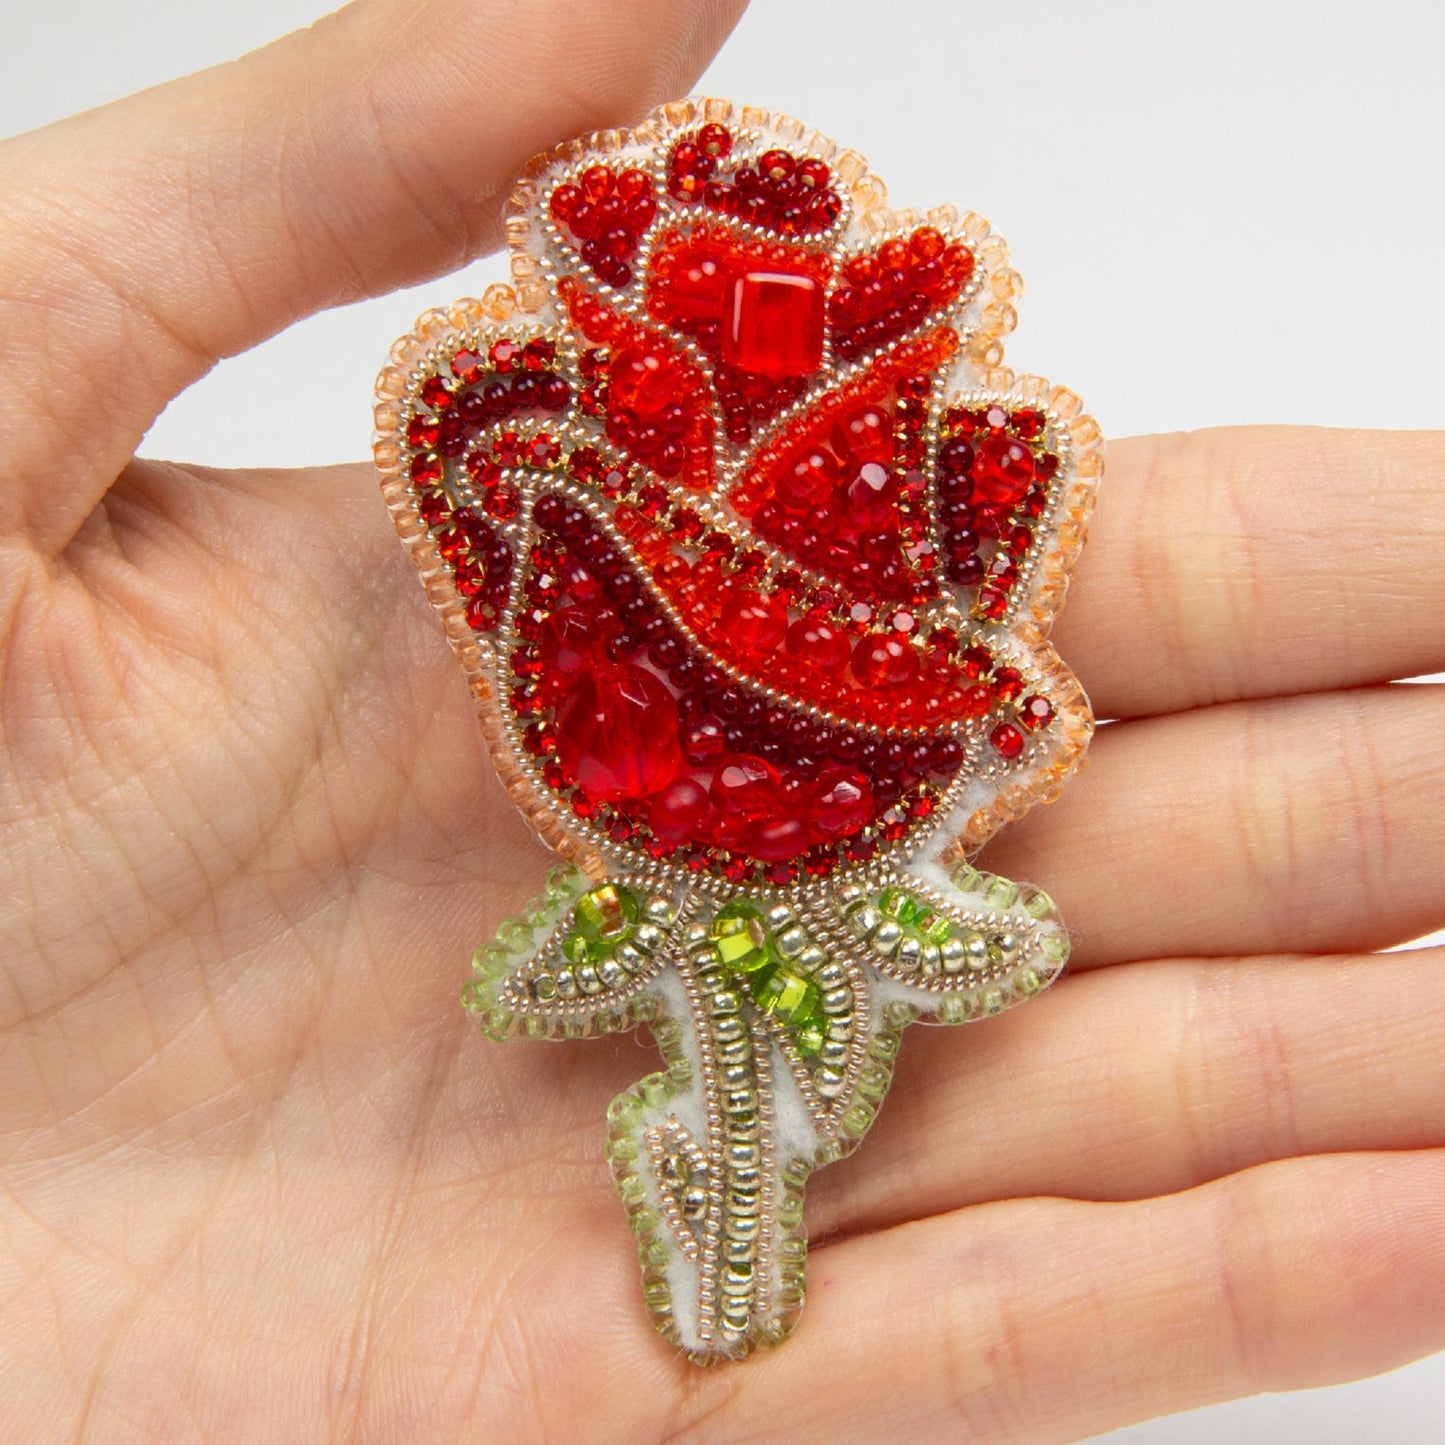 BP-275 Beadwork kit for creating broоch Crystal Art "Rose" - Leo Hobby